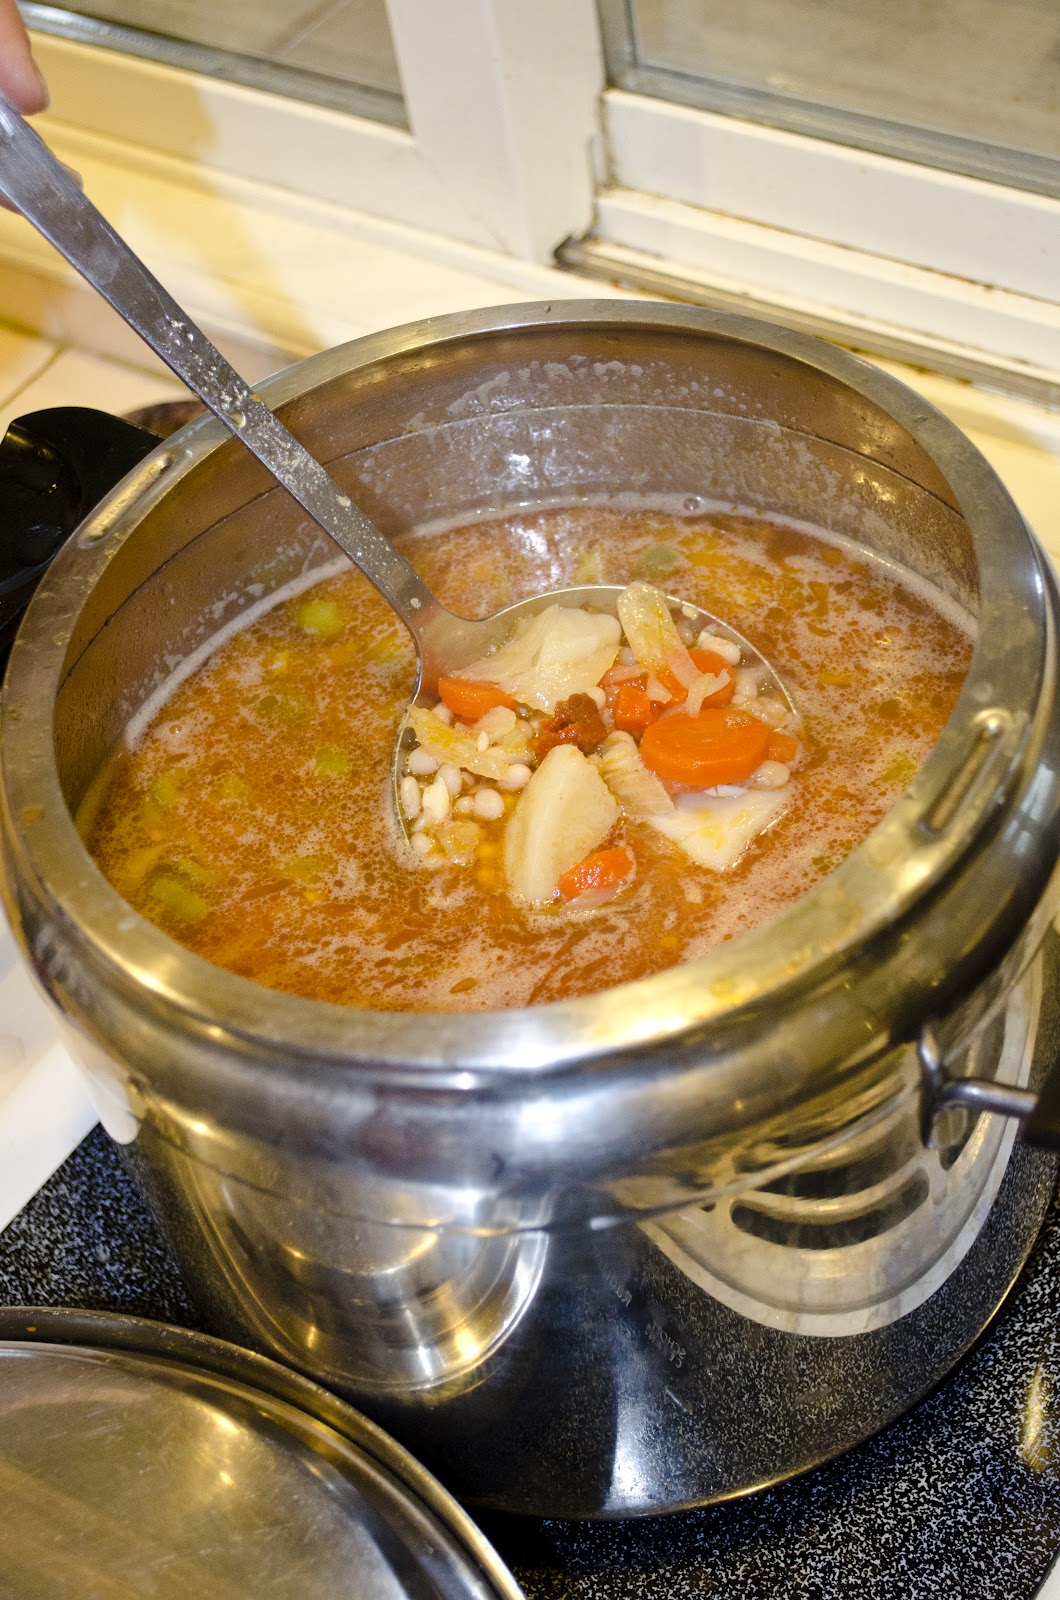 FRIJOLES BLANCOS-White bean soup | mmmm...Cuba